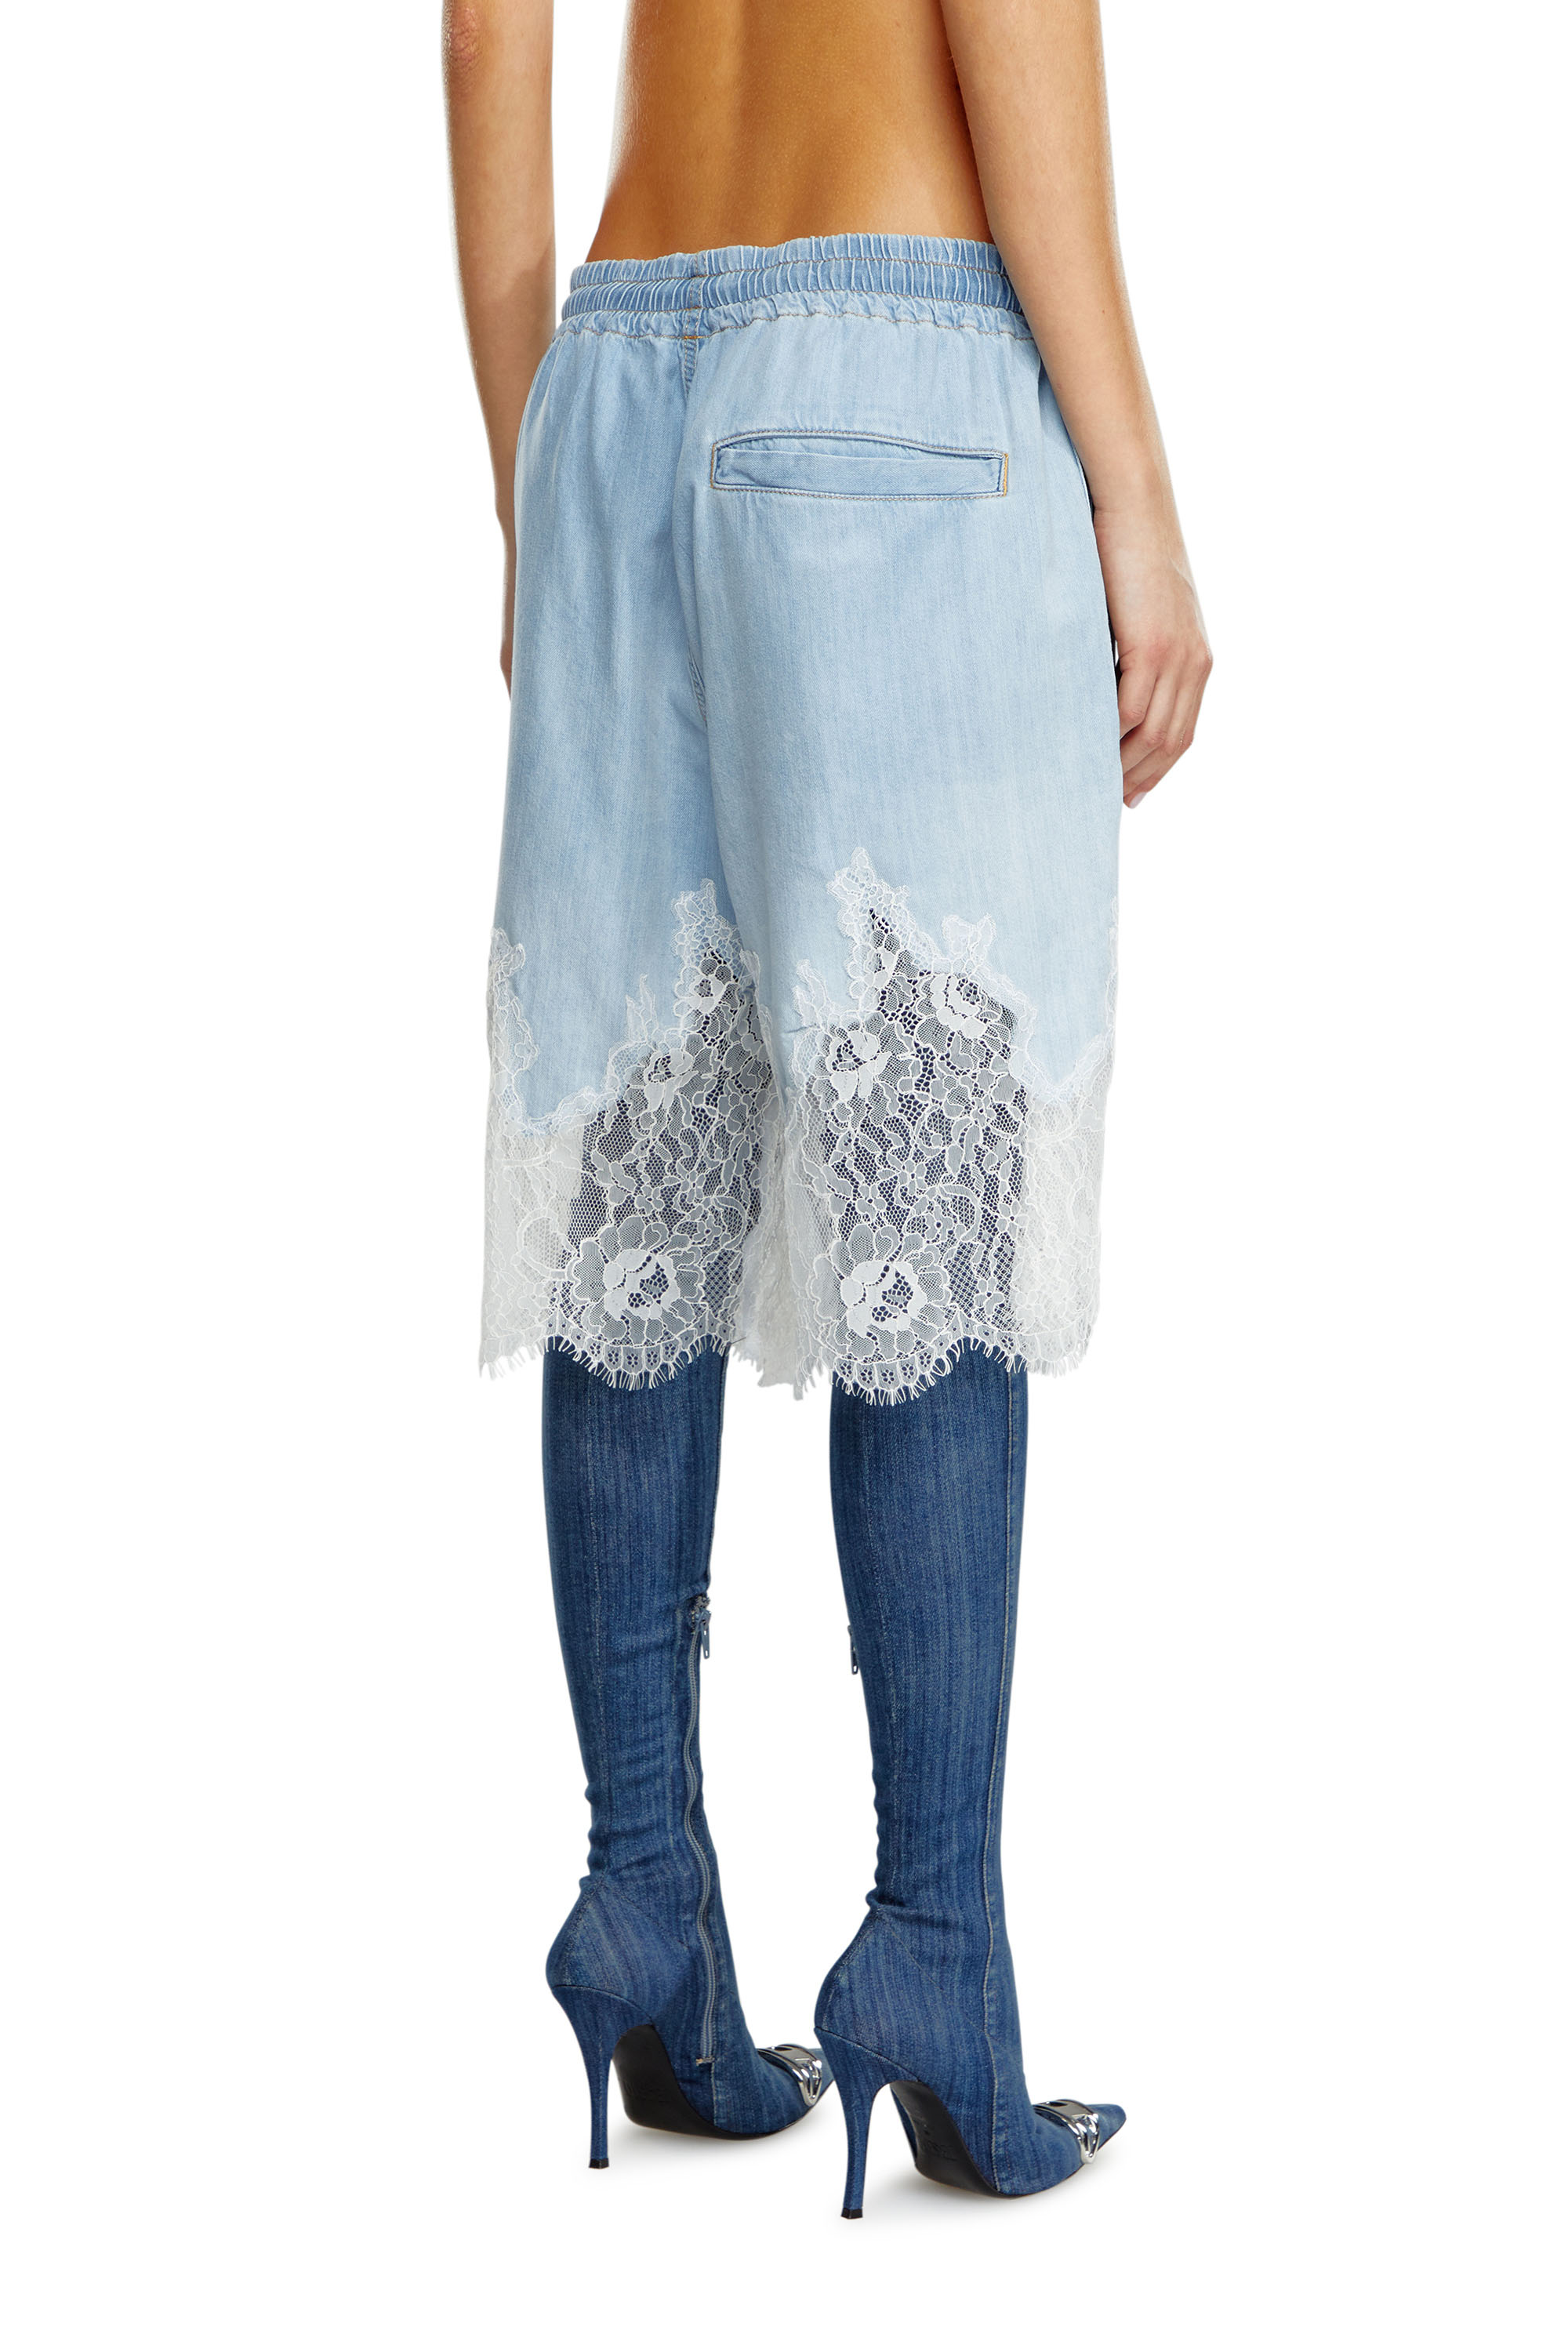 Diesel - DE-MALKIA-S, Woman Bermuda shorts in denim and lace in Blue - Image 3